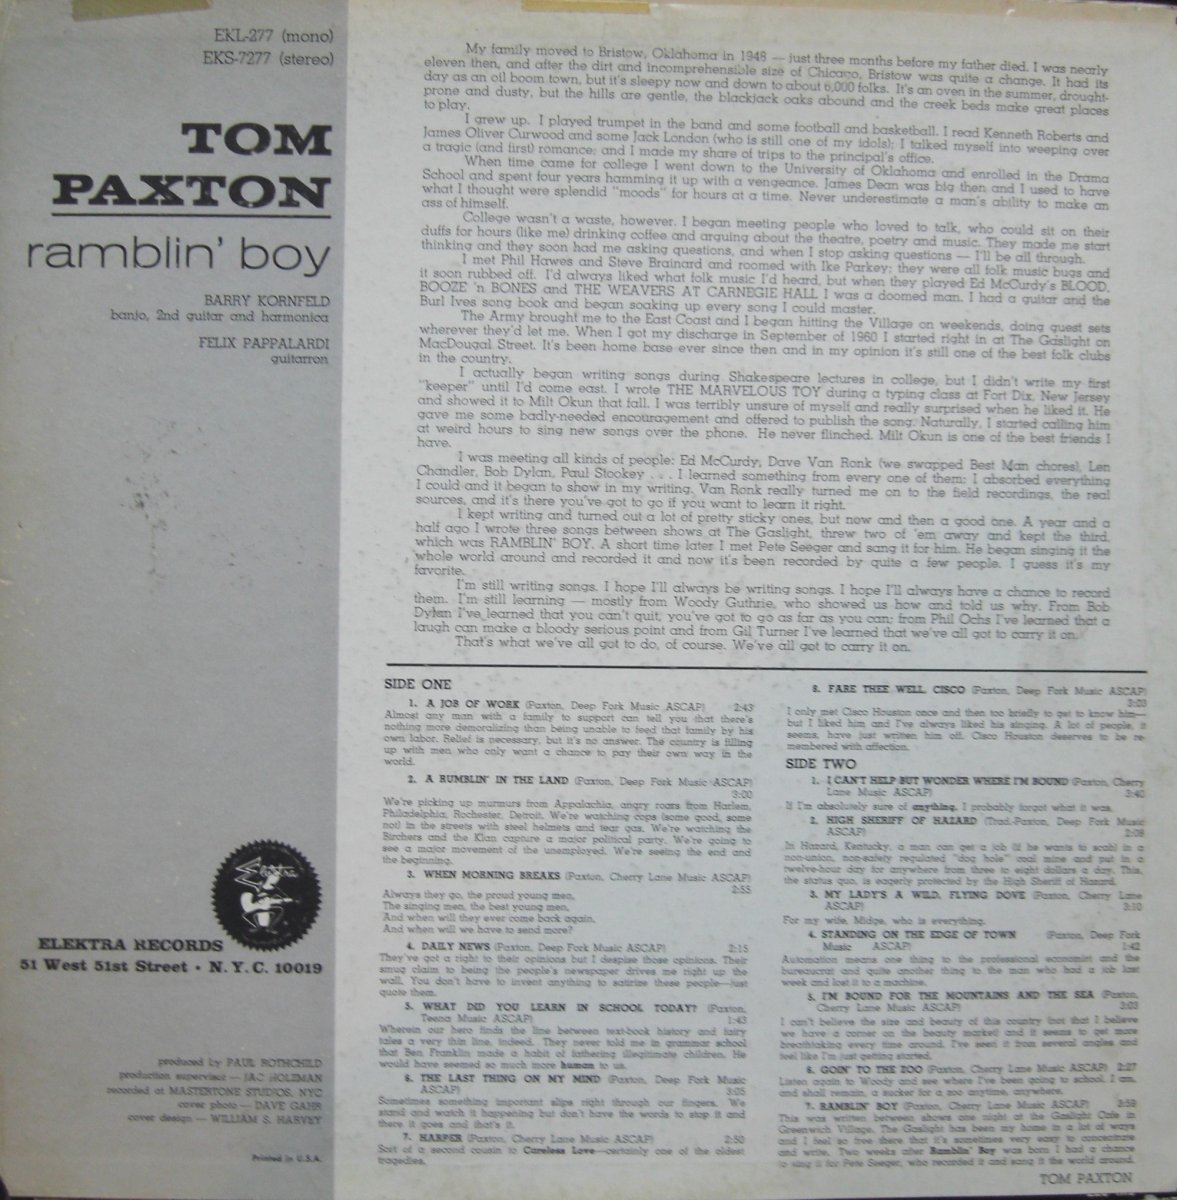 Tom Paxton – Ramblin' Boy